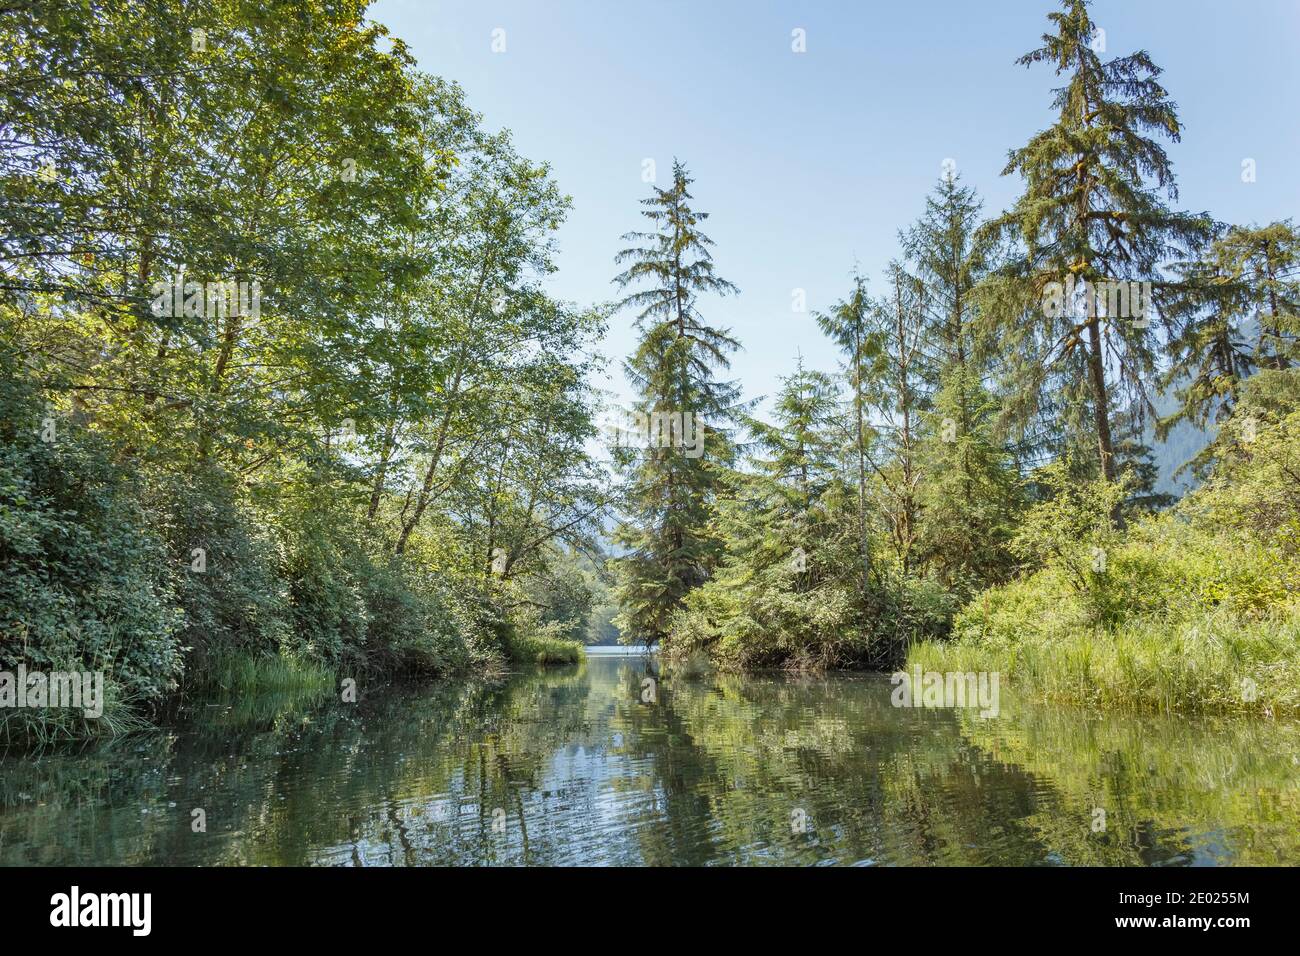 El agua azul y el cielo se encuentran con la exuberante vegetación verde y los árboles en las orillas del estuario del río Tzoonie, una zona silvestre en la Columbia Británica (verano). Foto de stock